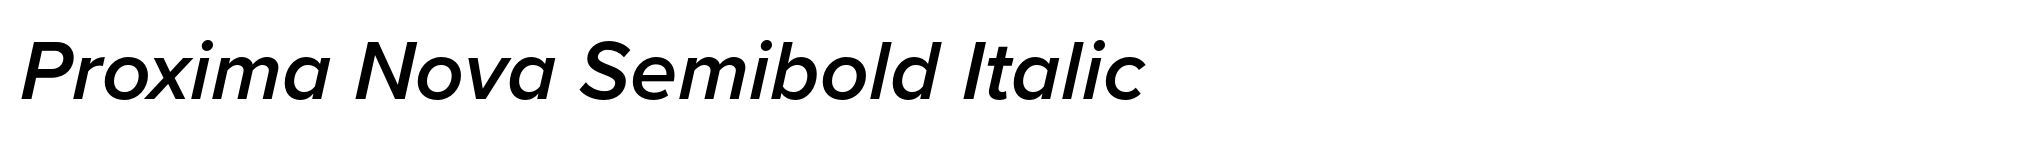 Proxima Nova Semibold Italic image